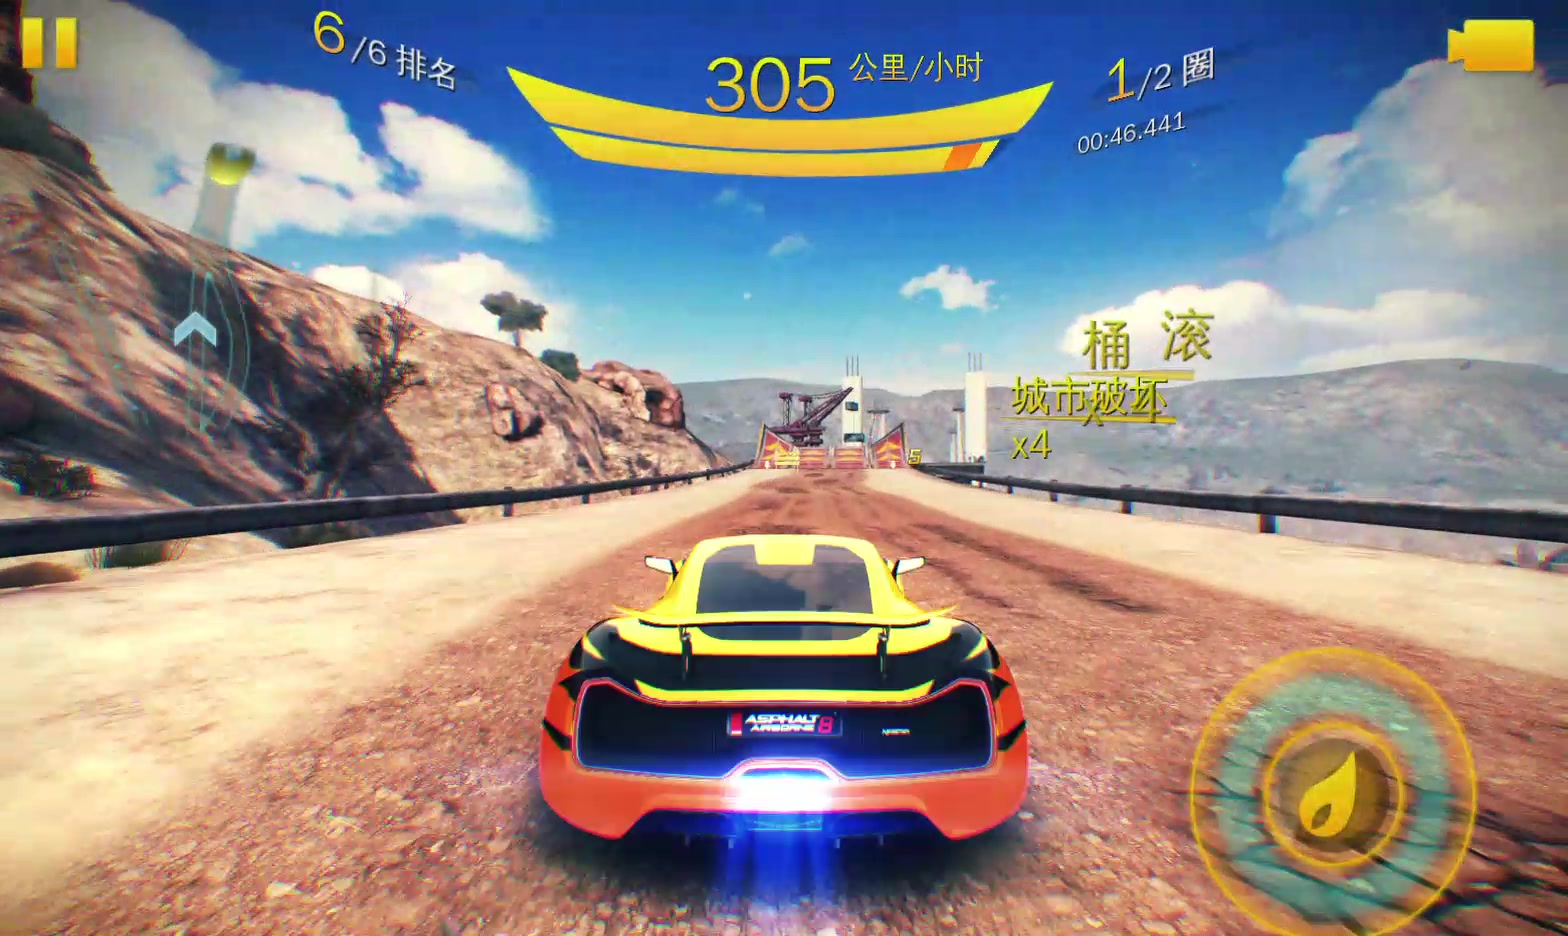 模拟行驶手机游戏推荐_模拟行驶手机游戏_行车模拟游戏